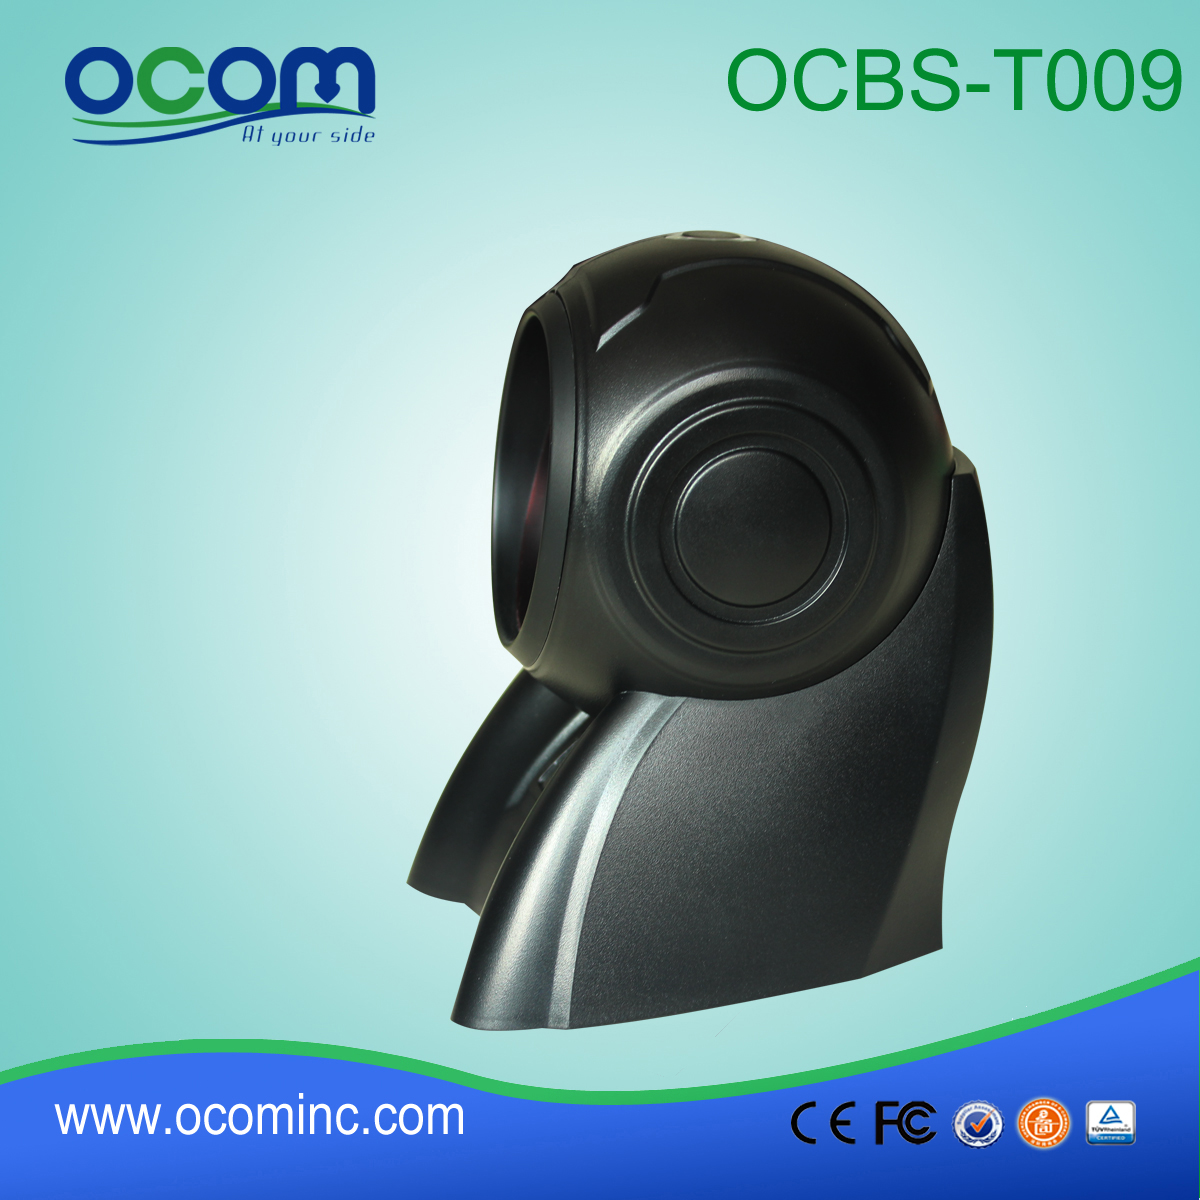 OCB-T009: Supermercato Auto Sense USB Macchina Barcode Scanner